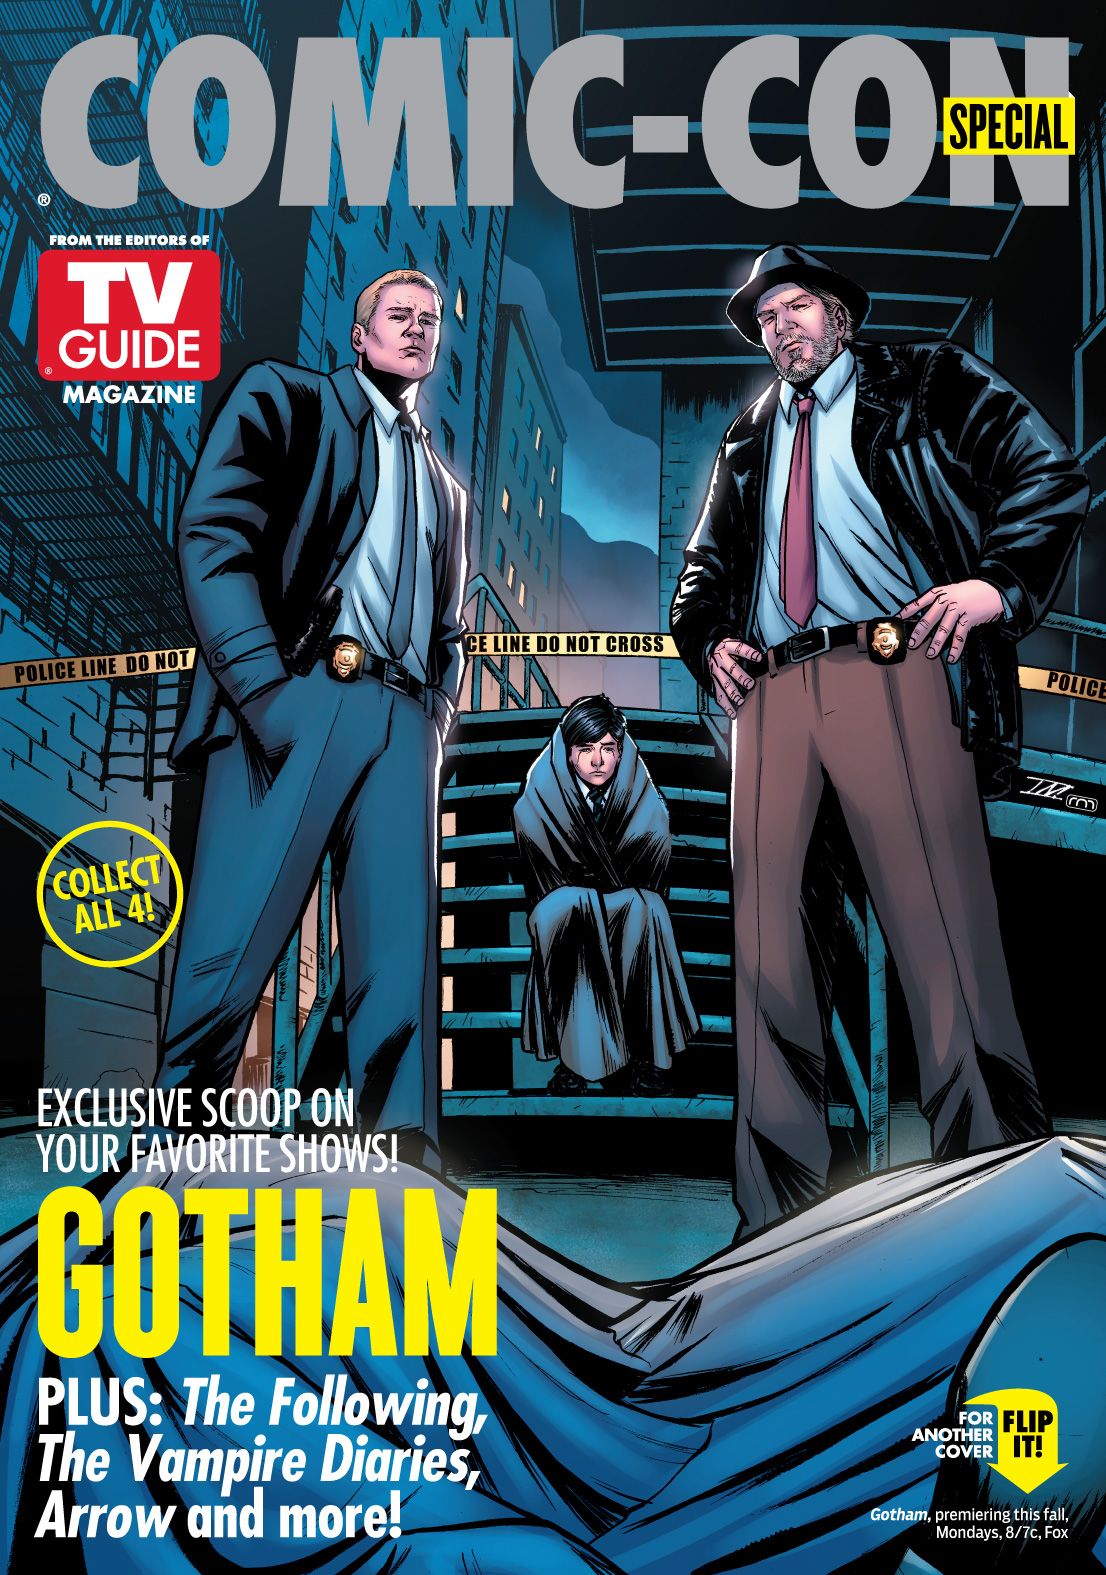 Gotham TV Guide Comic Con Cover